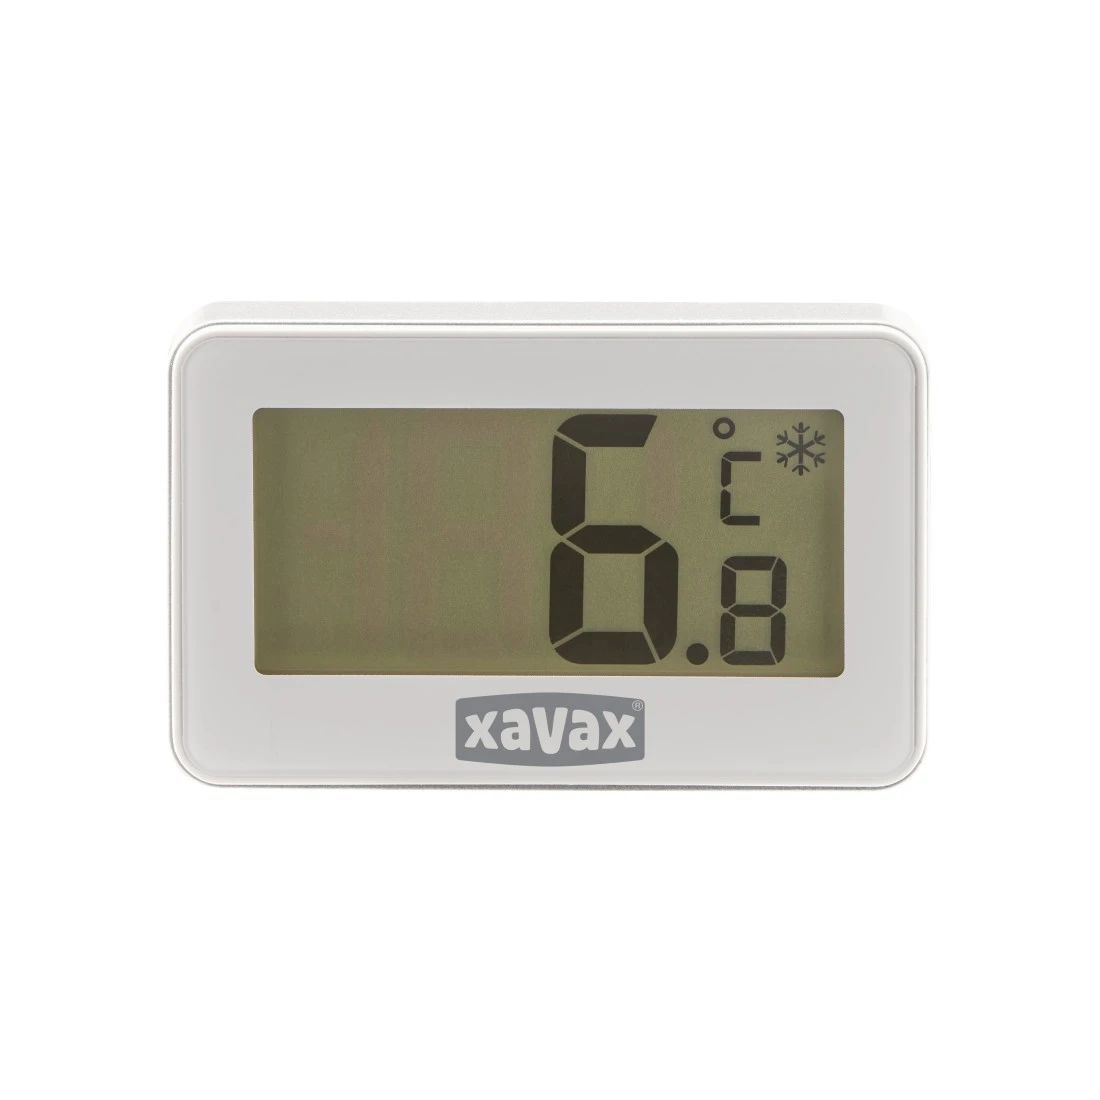 abx Druckfähige Abbildung - Xavax, Digitales Thermometer für Kühlschrank, Gefrierschrank und Kühltruhe, Weiß